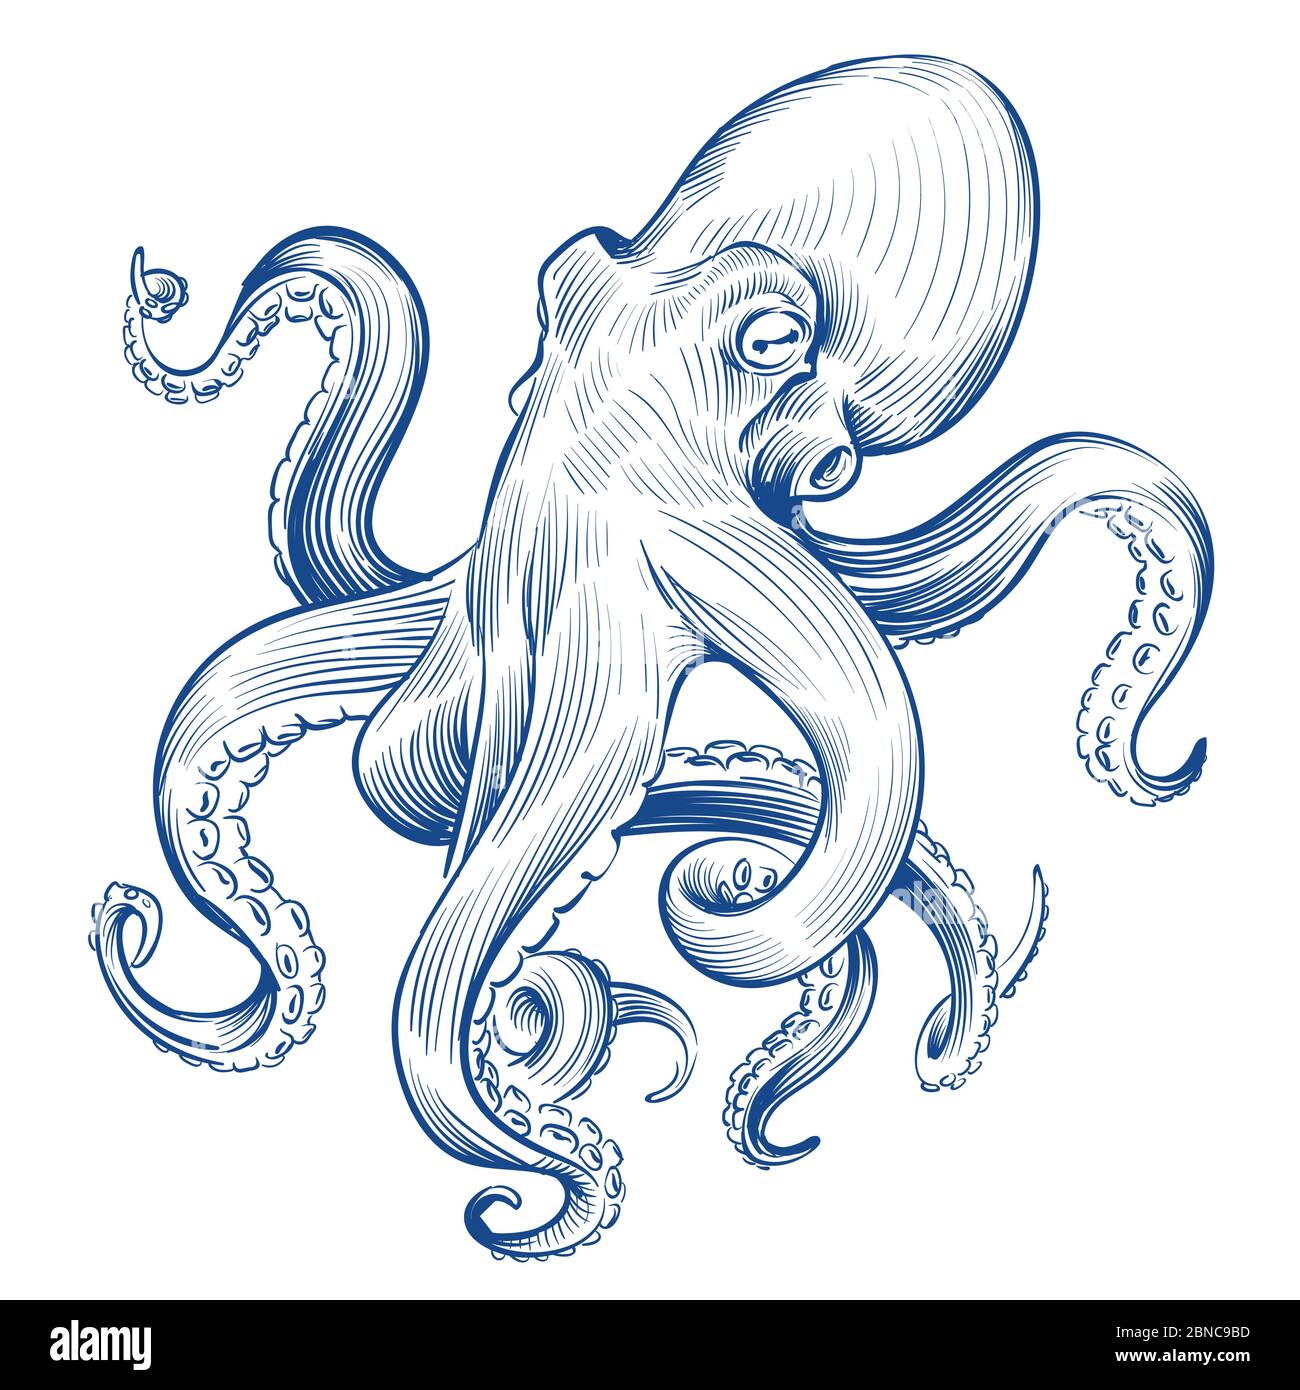 Poulpe vintage. Animal de l'océan gravé à la main. Gravure de l'illustration du vecteur octopus. Pieuvre de calamar, fruits de mer marins Illustration de Vecteur